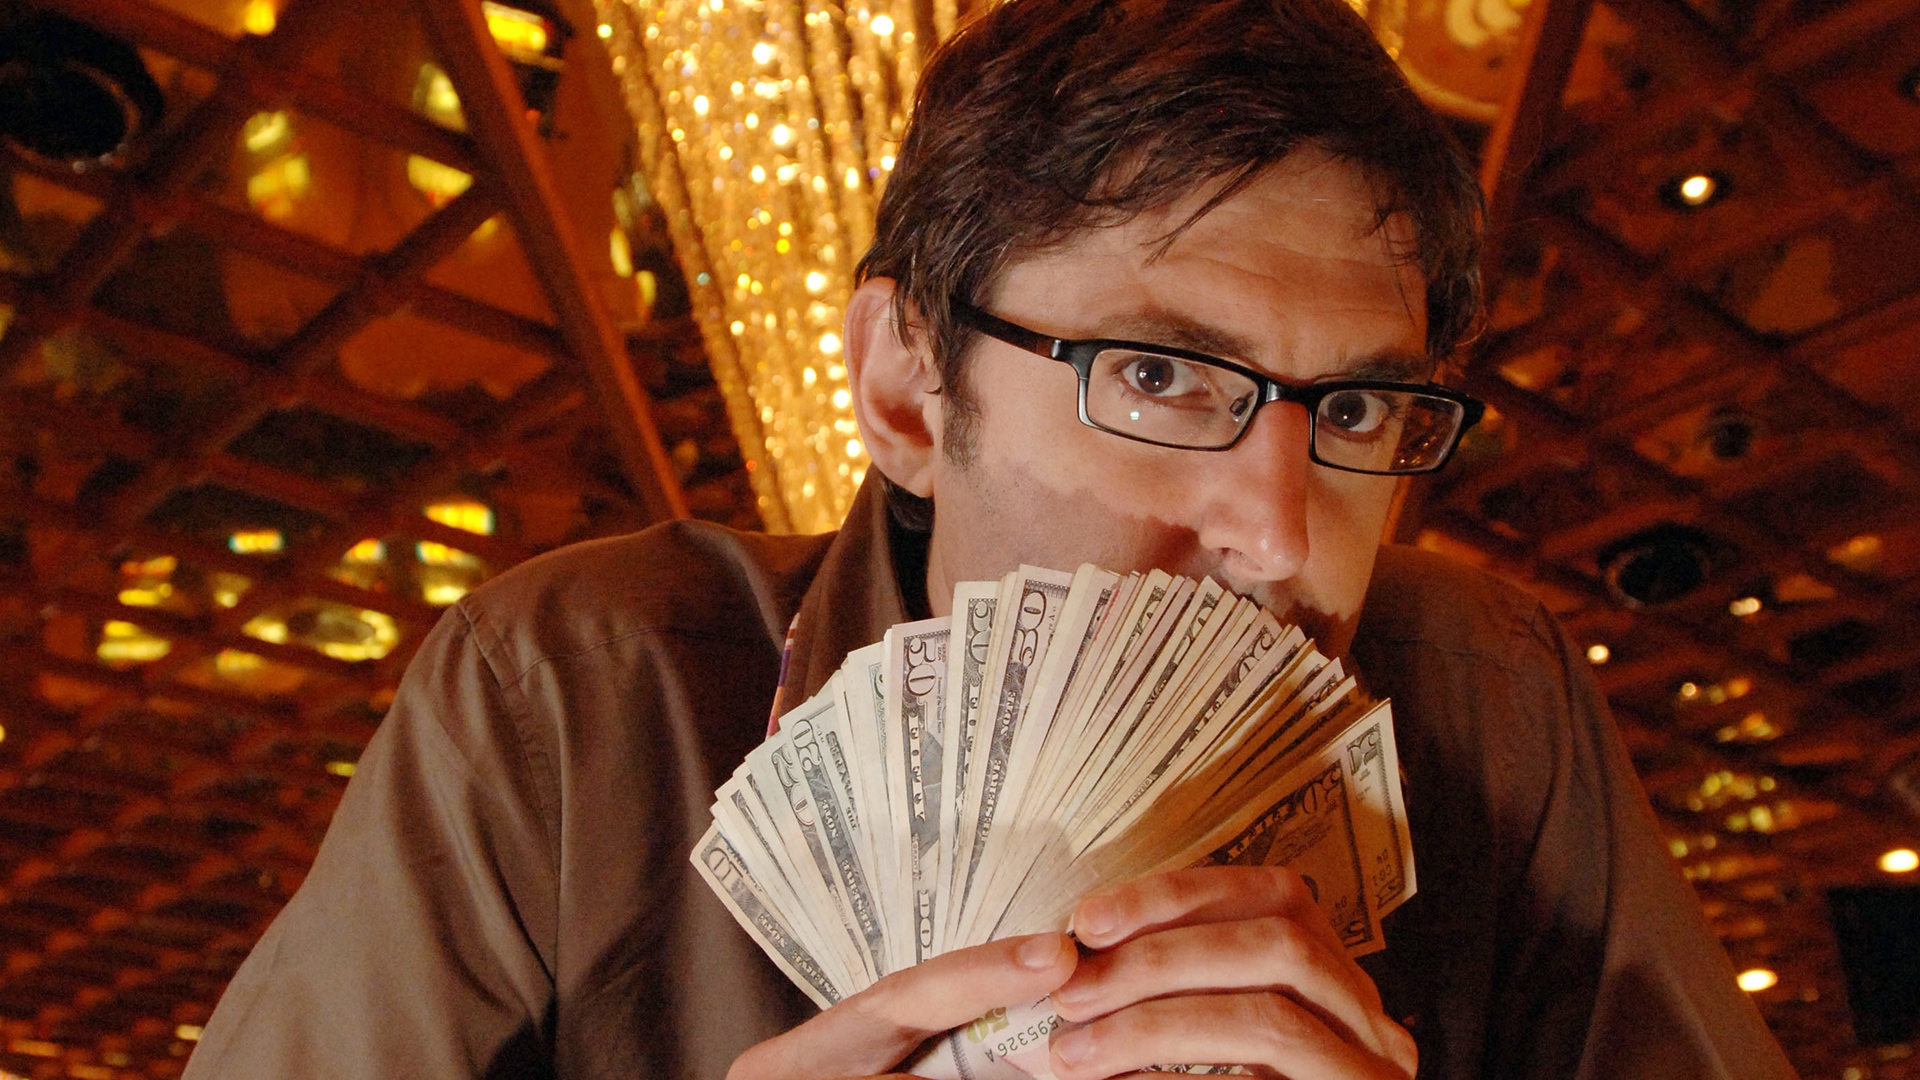 Louis Theroux: Gambling in Las Vegas (TV Movie 2007) - IMDb